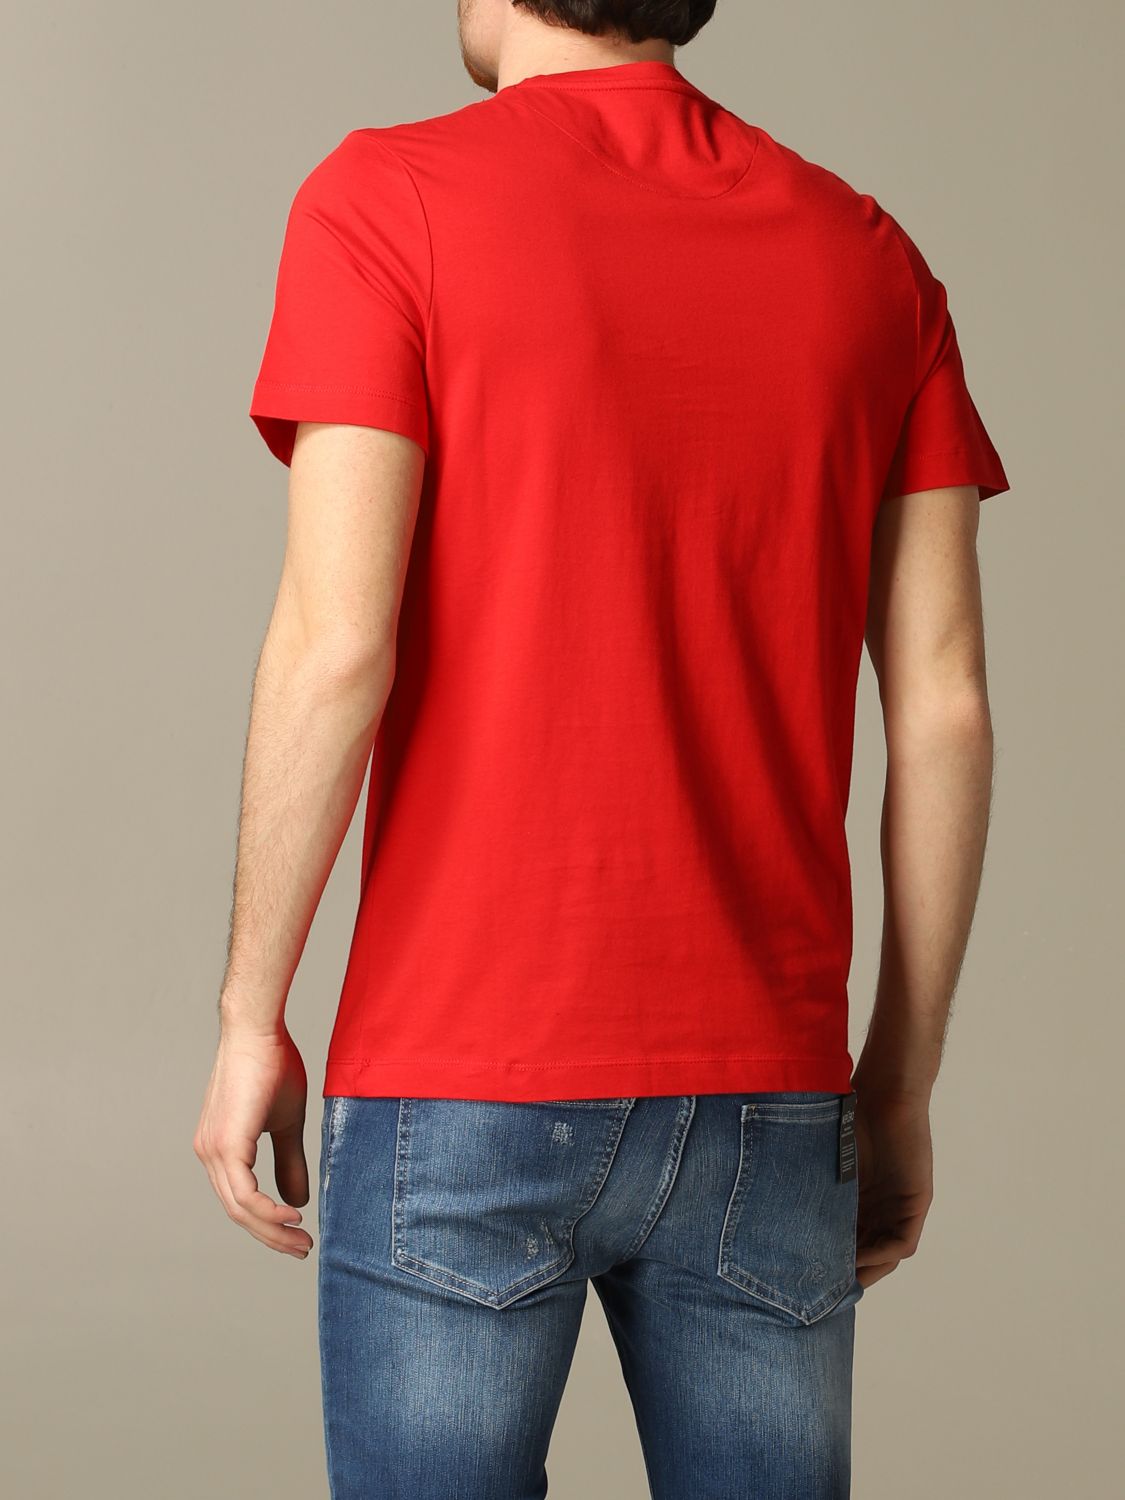 ユニークな-フランキーモレロ レディース Tシャツ トッ•プス• T-shirt ...